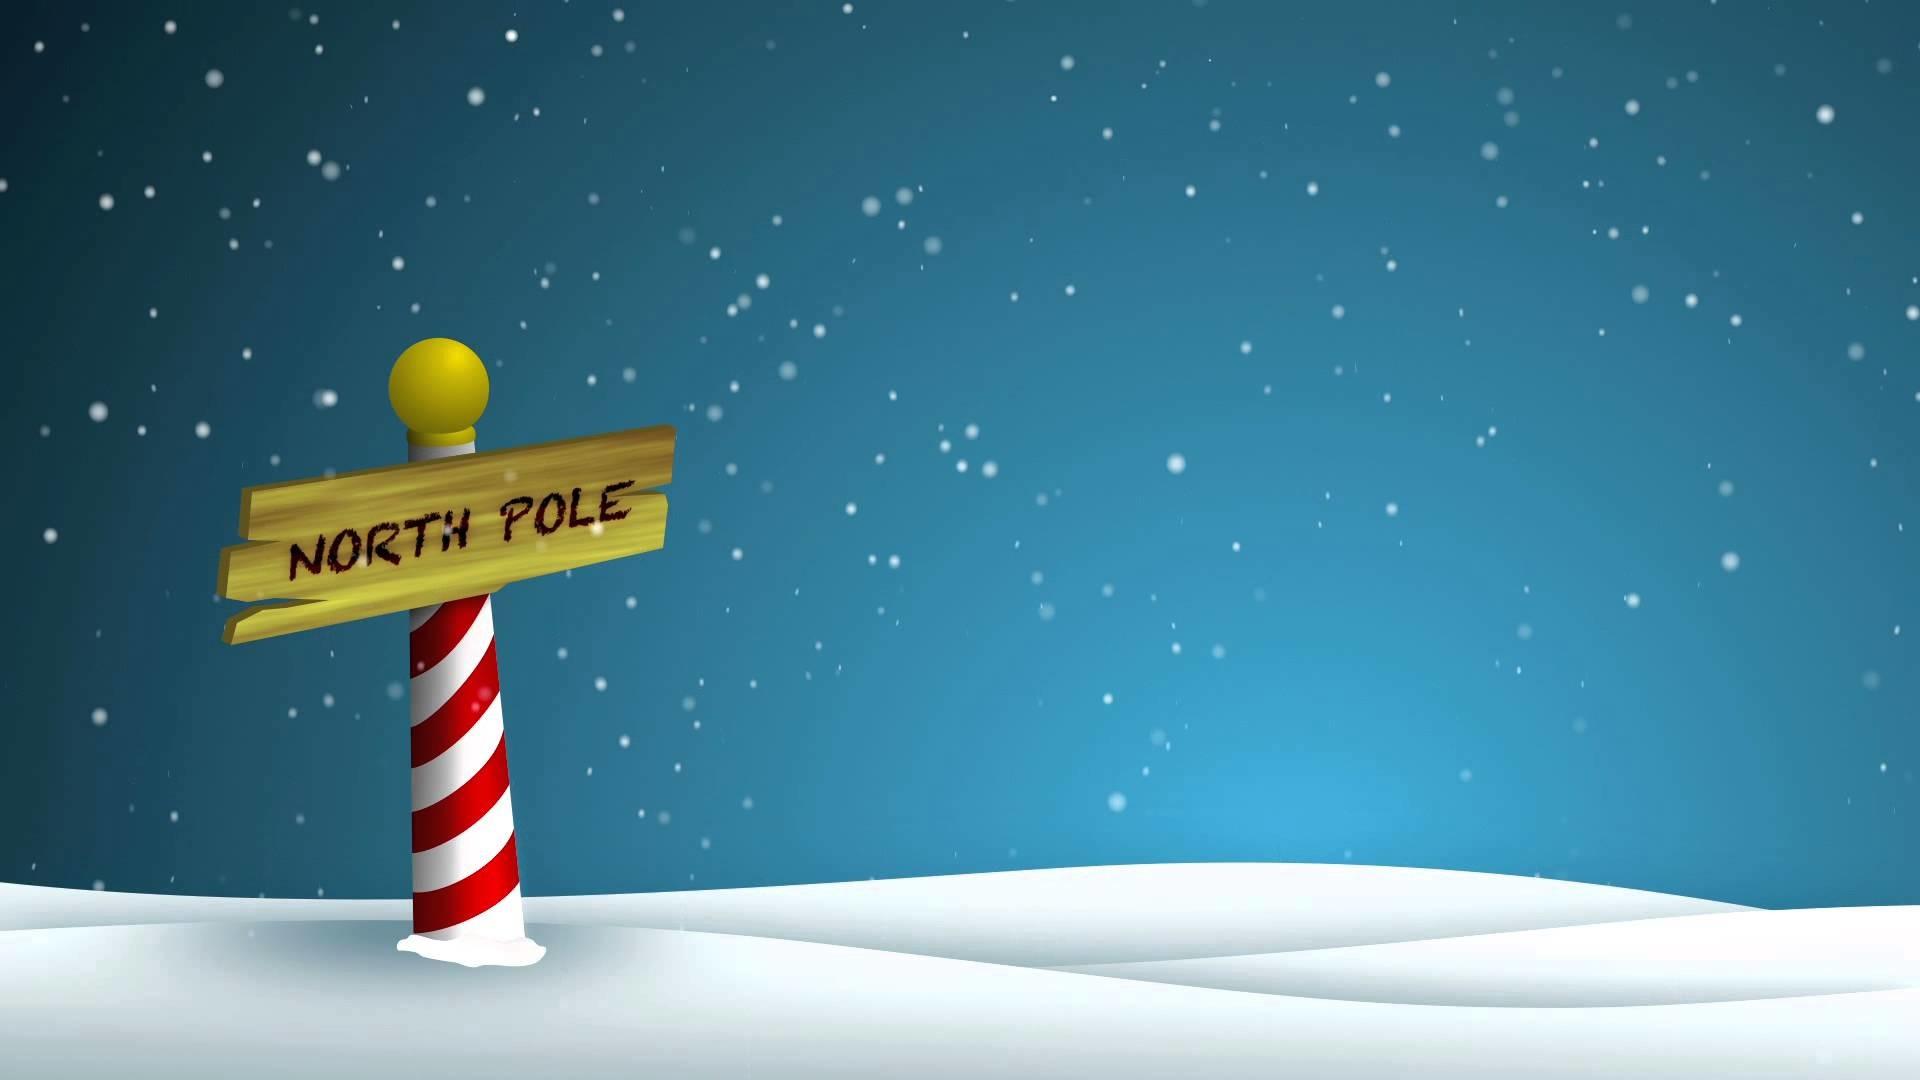 South Pole Cartoon Background